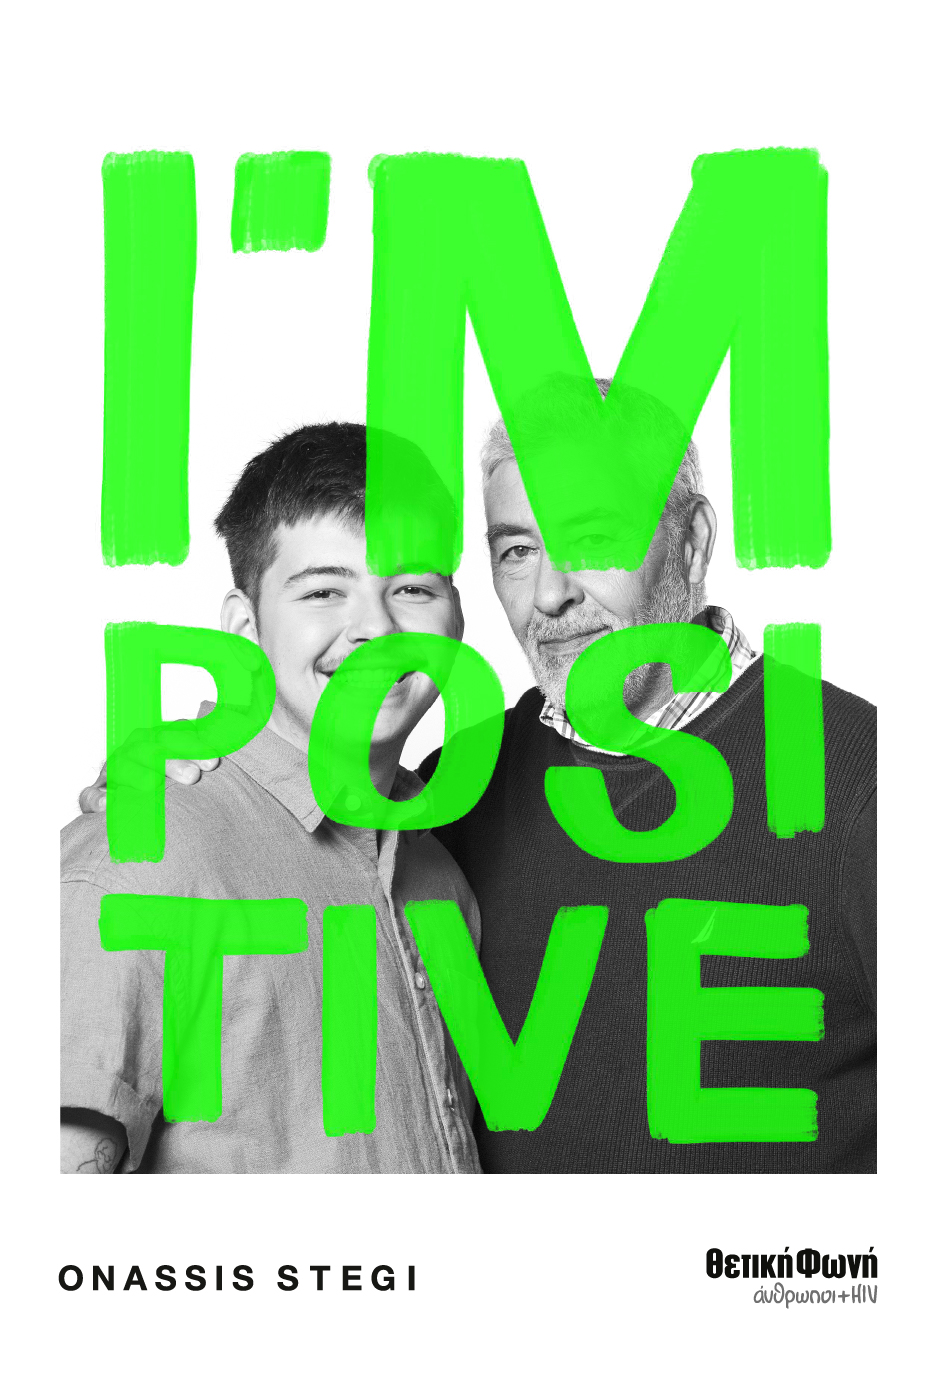 I’m Positive: Ιστορίες συμπερίληψης και διαφορετικές όψεις του HIV σε μια ανοιχτή συζήτηση στη Στέγη